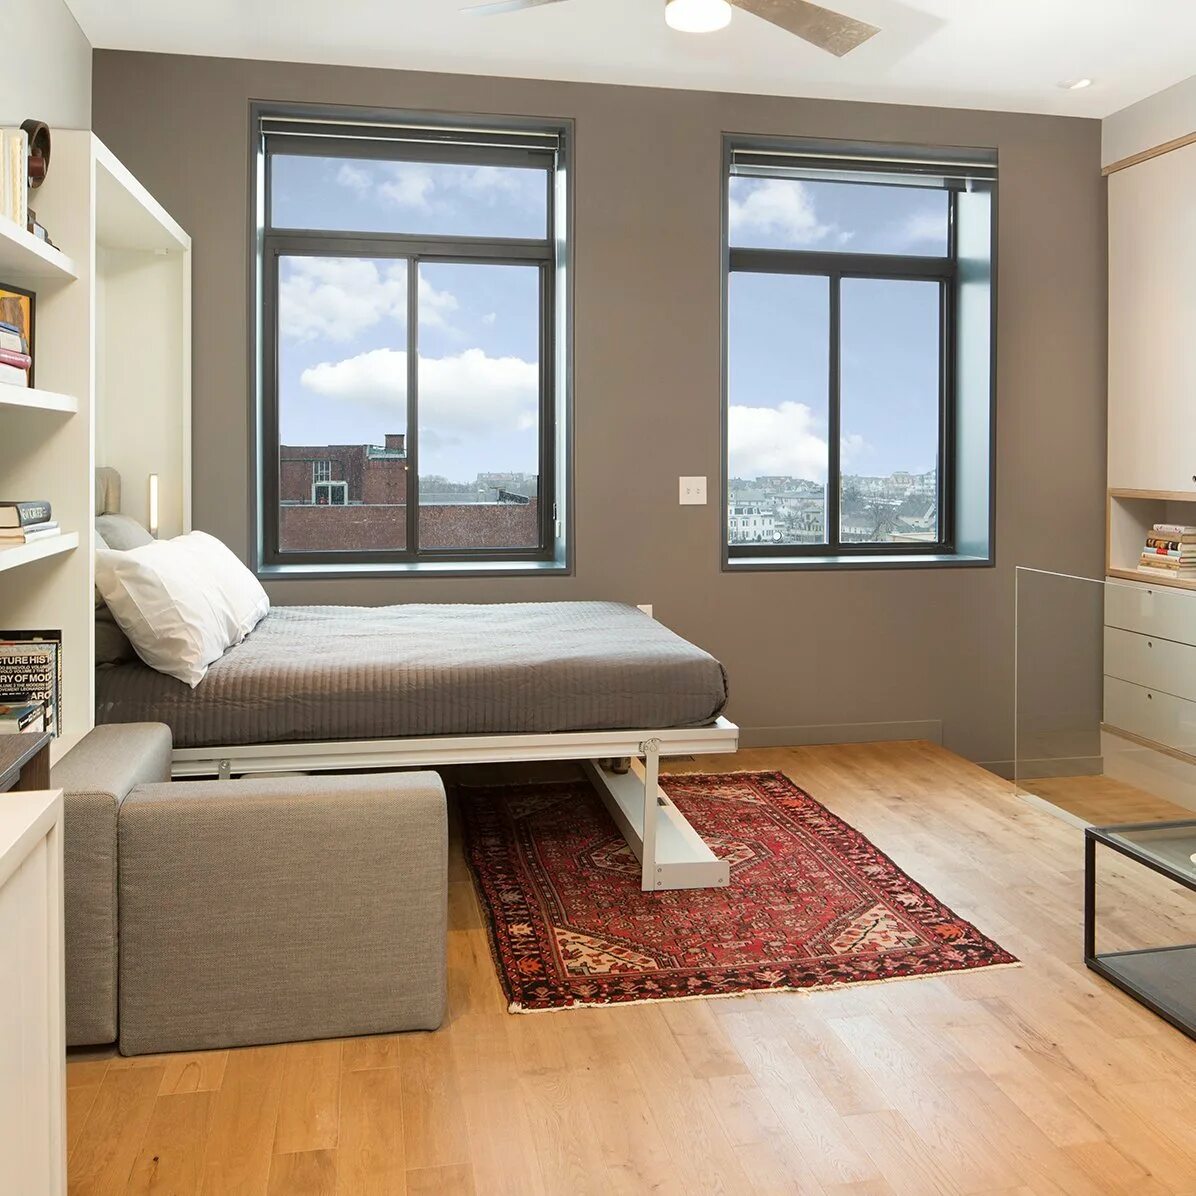 Мебель в 1 комнатной квартире фото. Дизайн маленьких квартир. Дизайн однокомнатной квартиры. Расставить мебель в комнате. Интерьер небольшой квартиры.